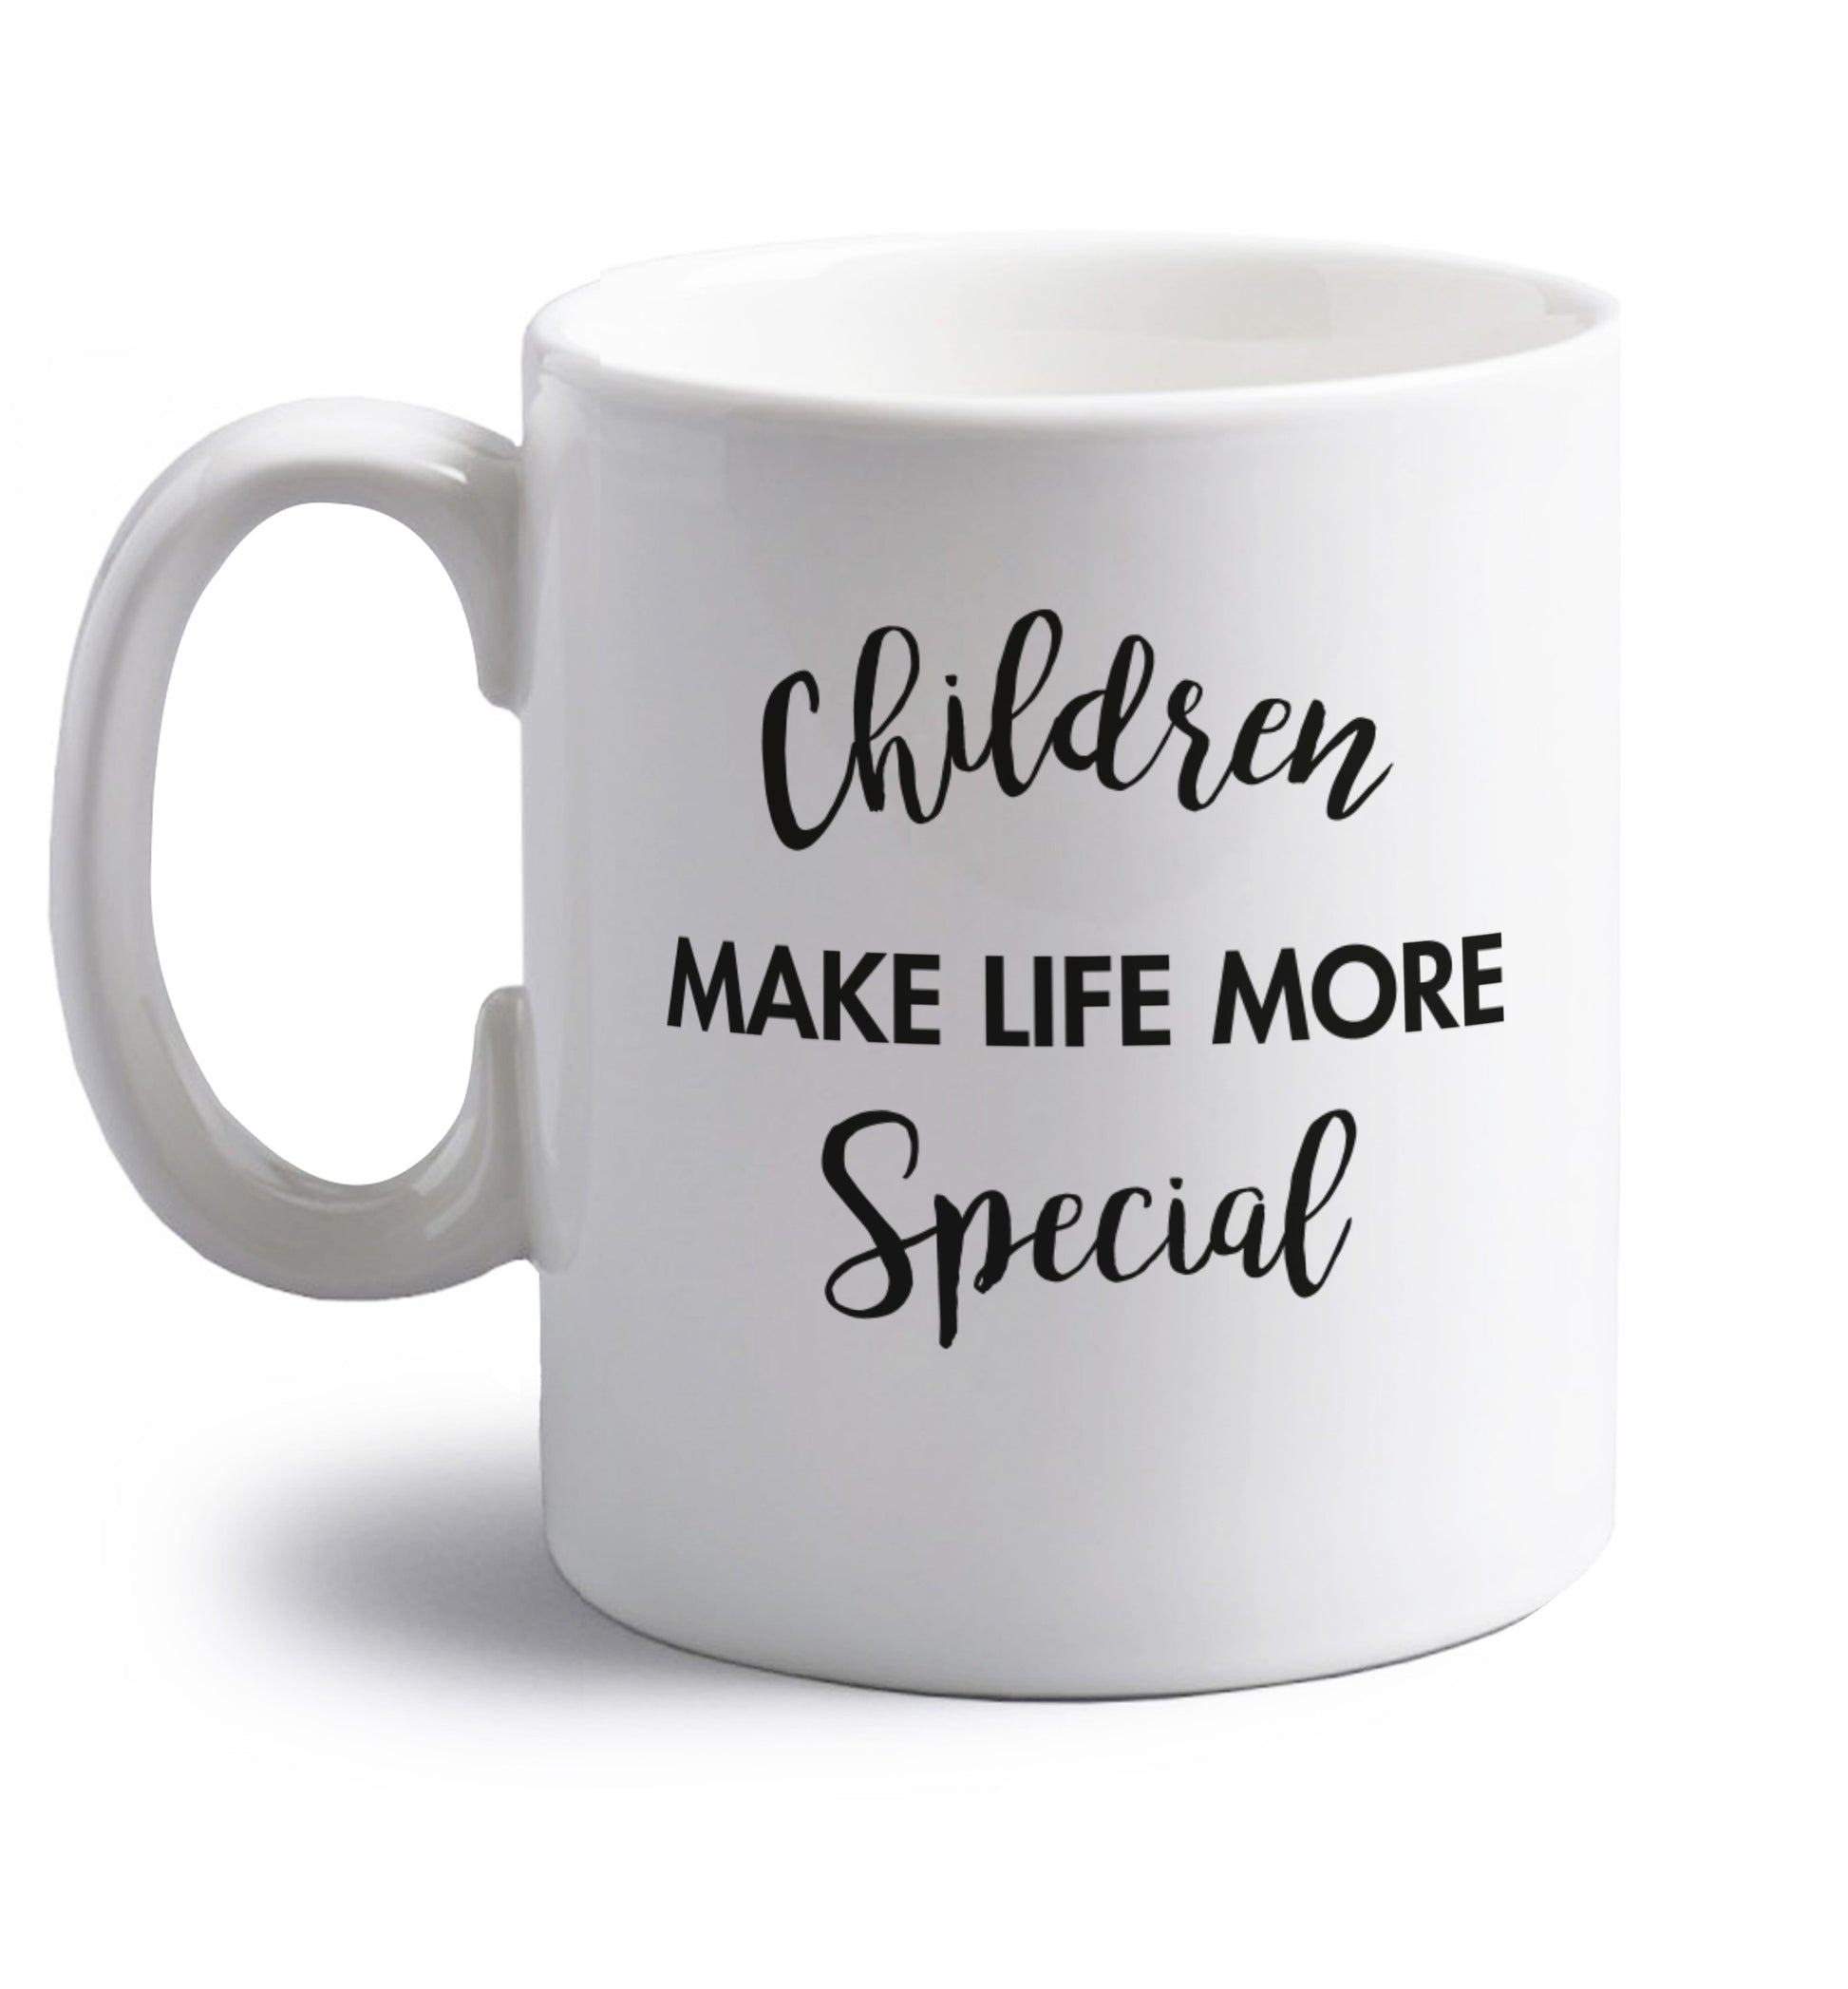 Children make life more special right handed white ceramic mug 